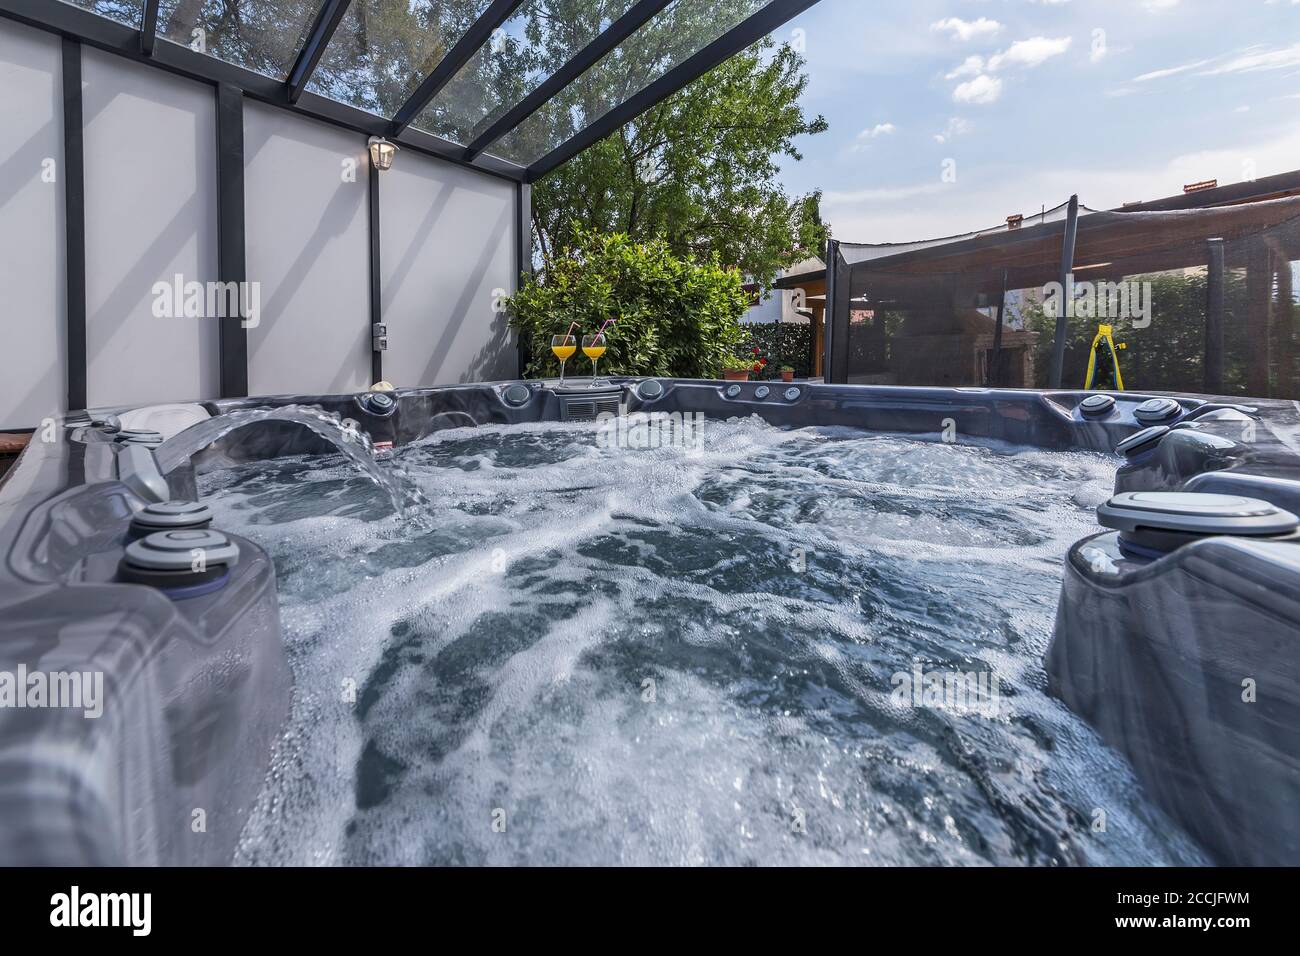 piscine extérieure moderne avec massages, boissons fraîches et vin Banque D'Images